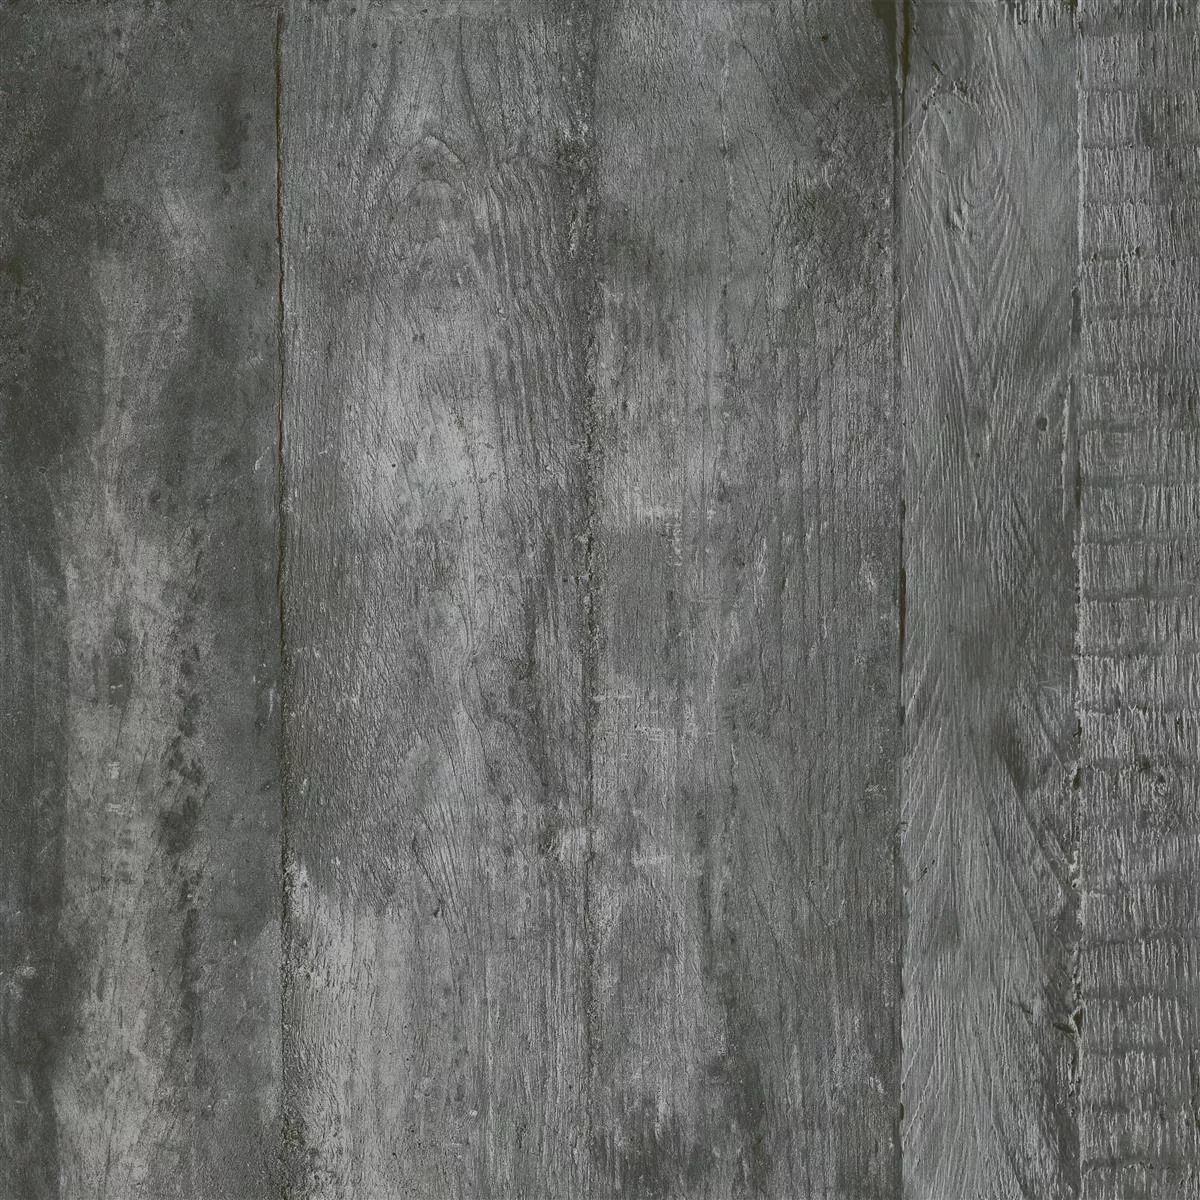 Sample Floor Tiles Gorki Wood Optic 60x60cm Glazed Graphit